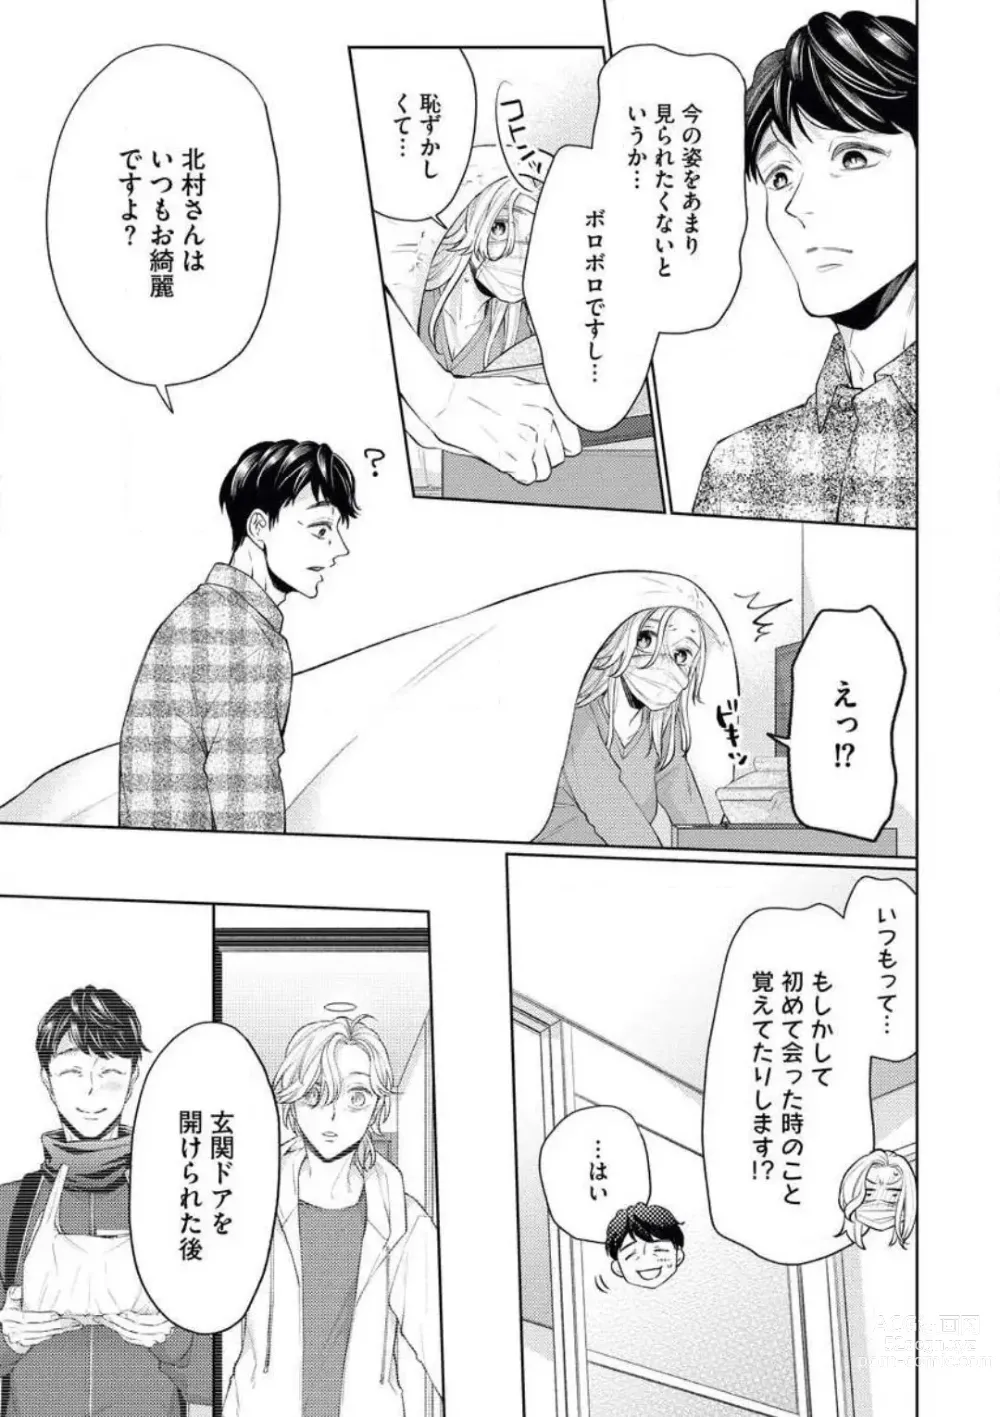 Page 13 of manga Anata o Kudasai!